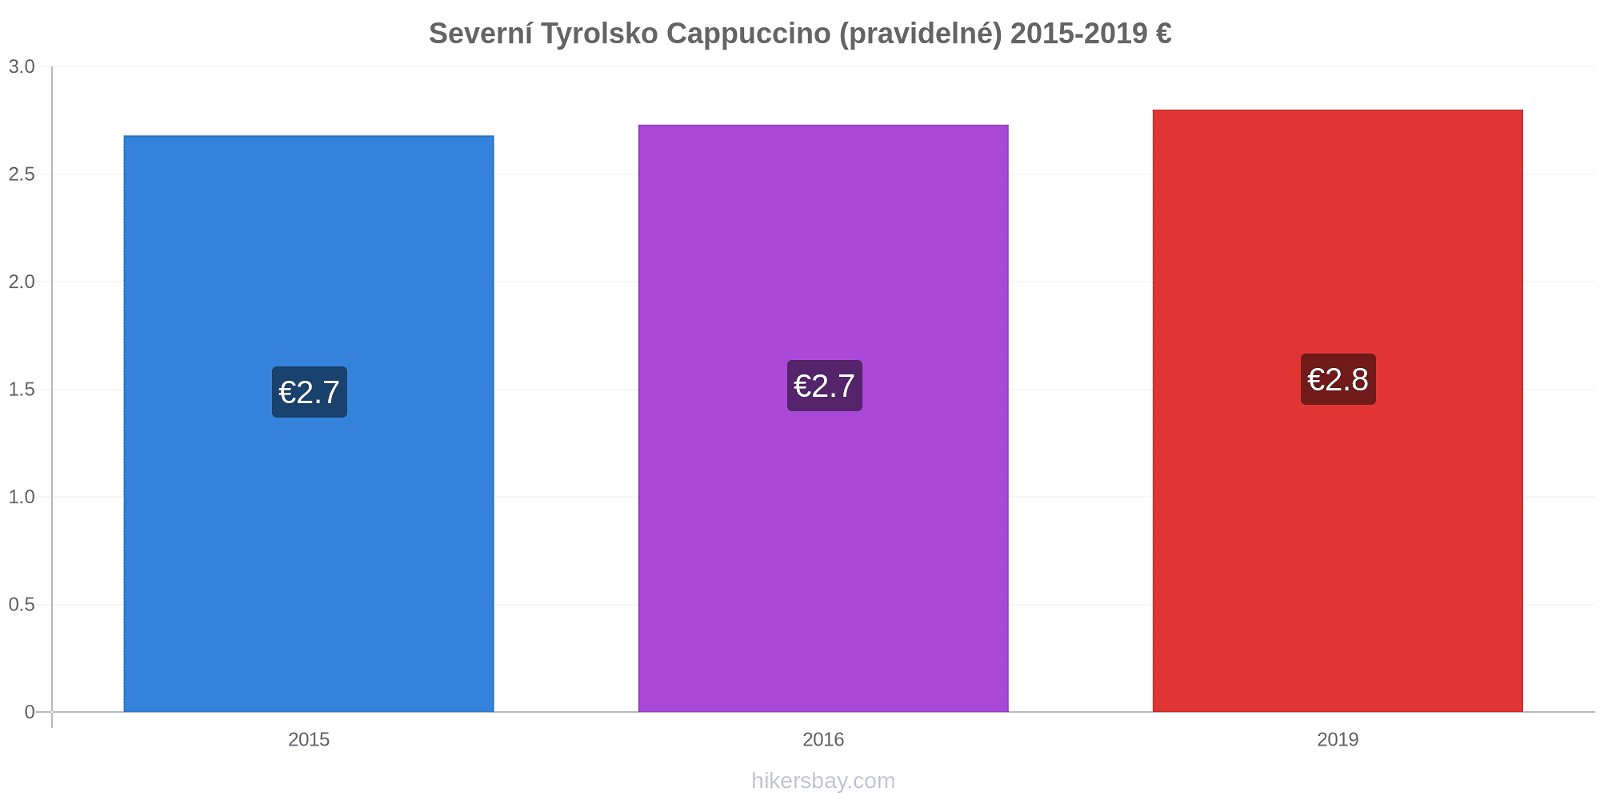 Severní Tyrolsko změny cen Cappuccino (pravidelné) hikersbay.com